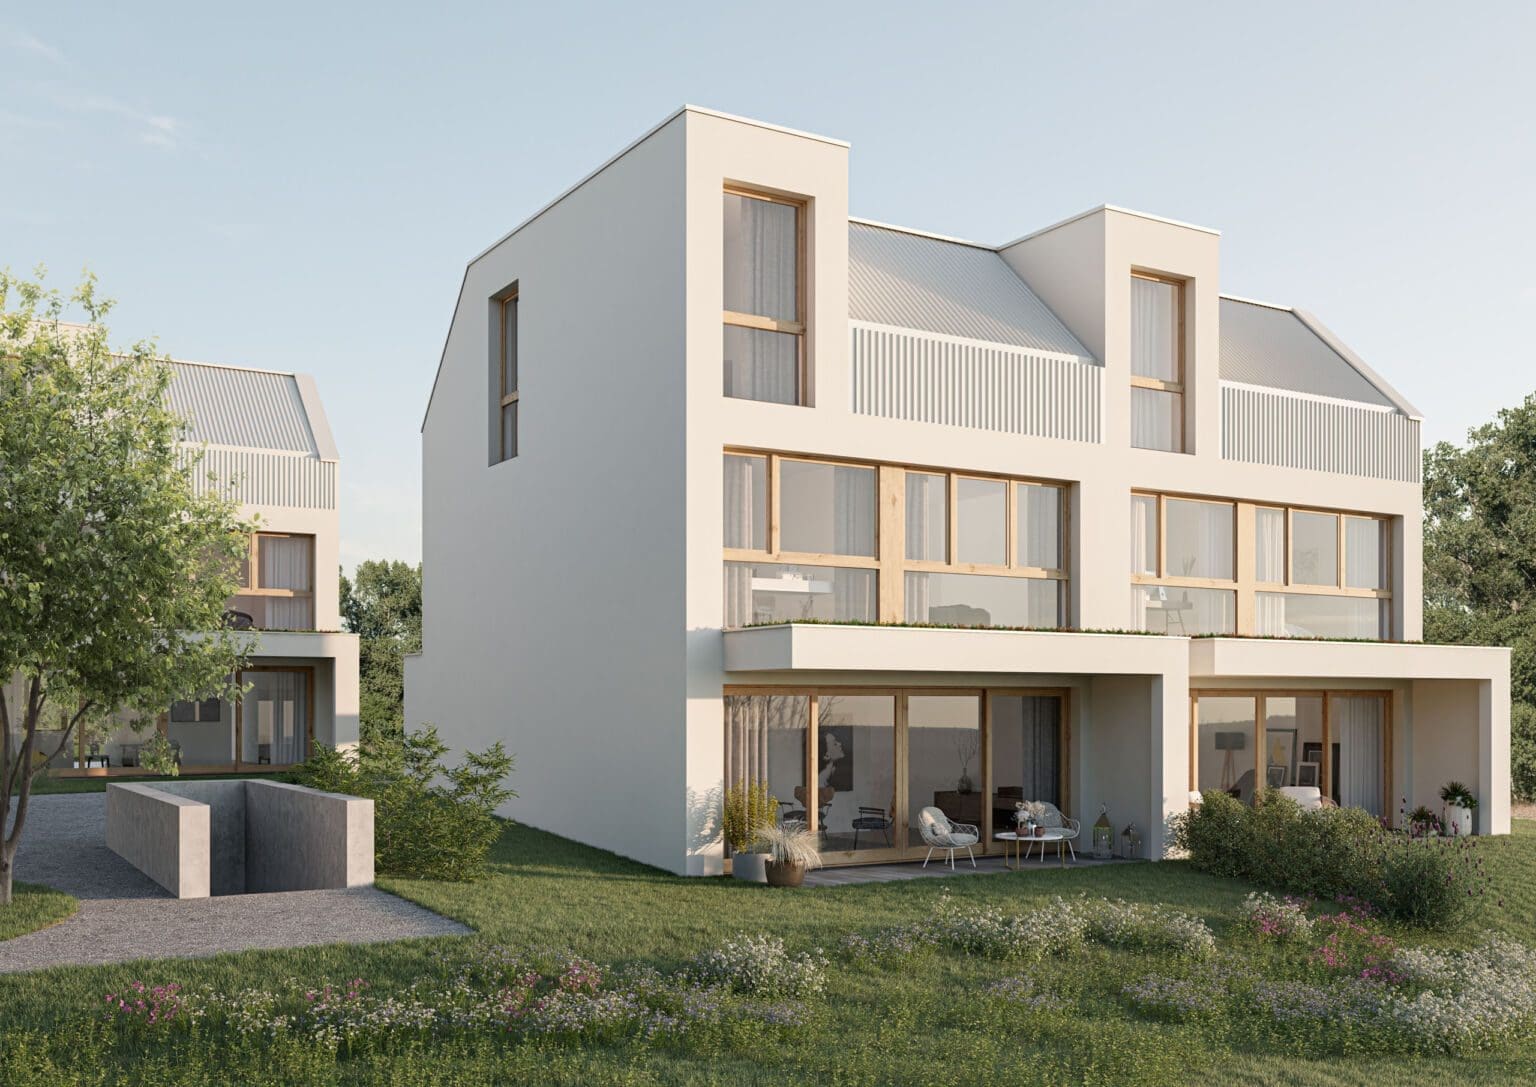 Architektur Visualisierung für Vermarktung modernes Haus